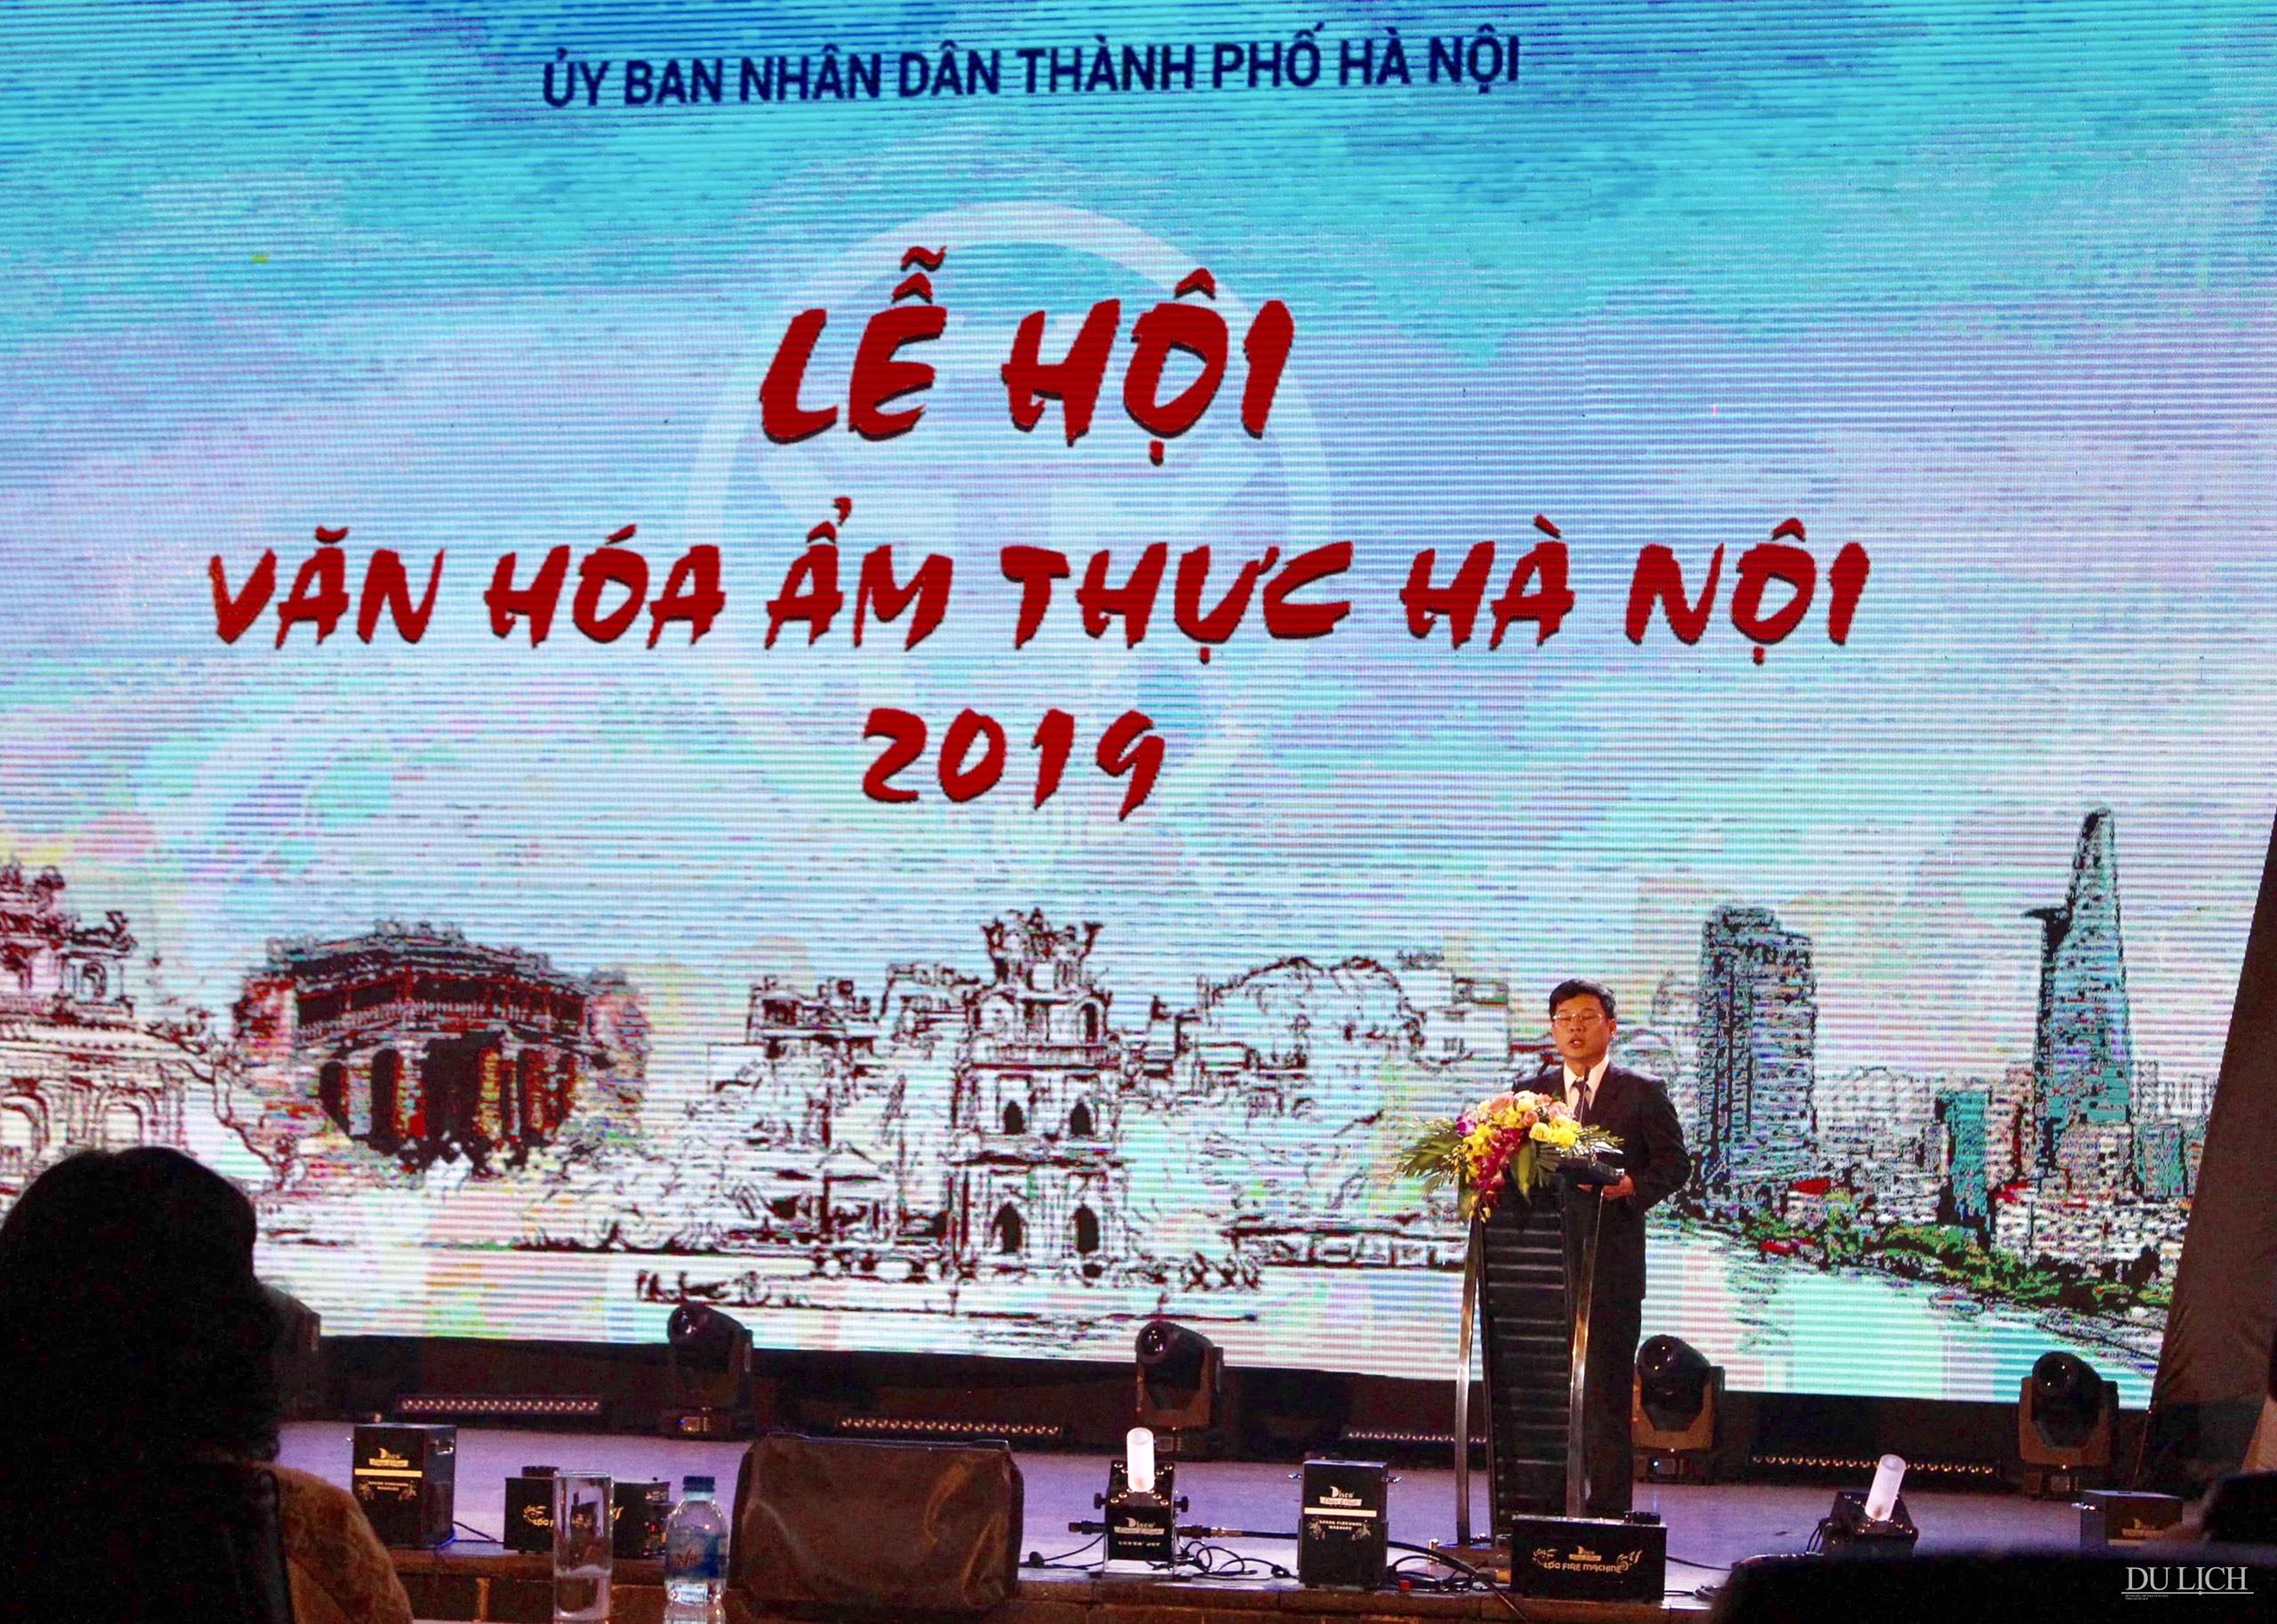 Phó Chủ tịch UBND TP. Hà Nội Ngô Văn Quý phát biểu khai mạc lễ hội